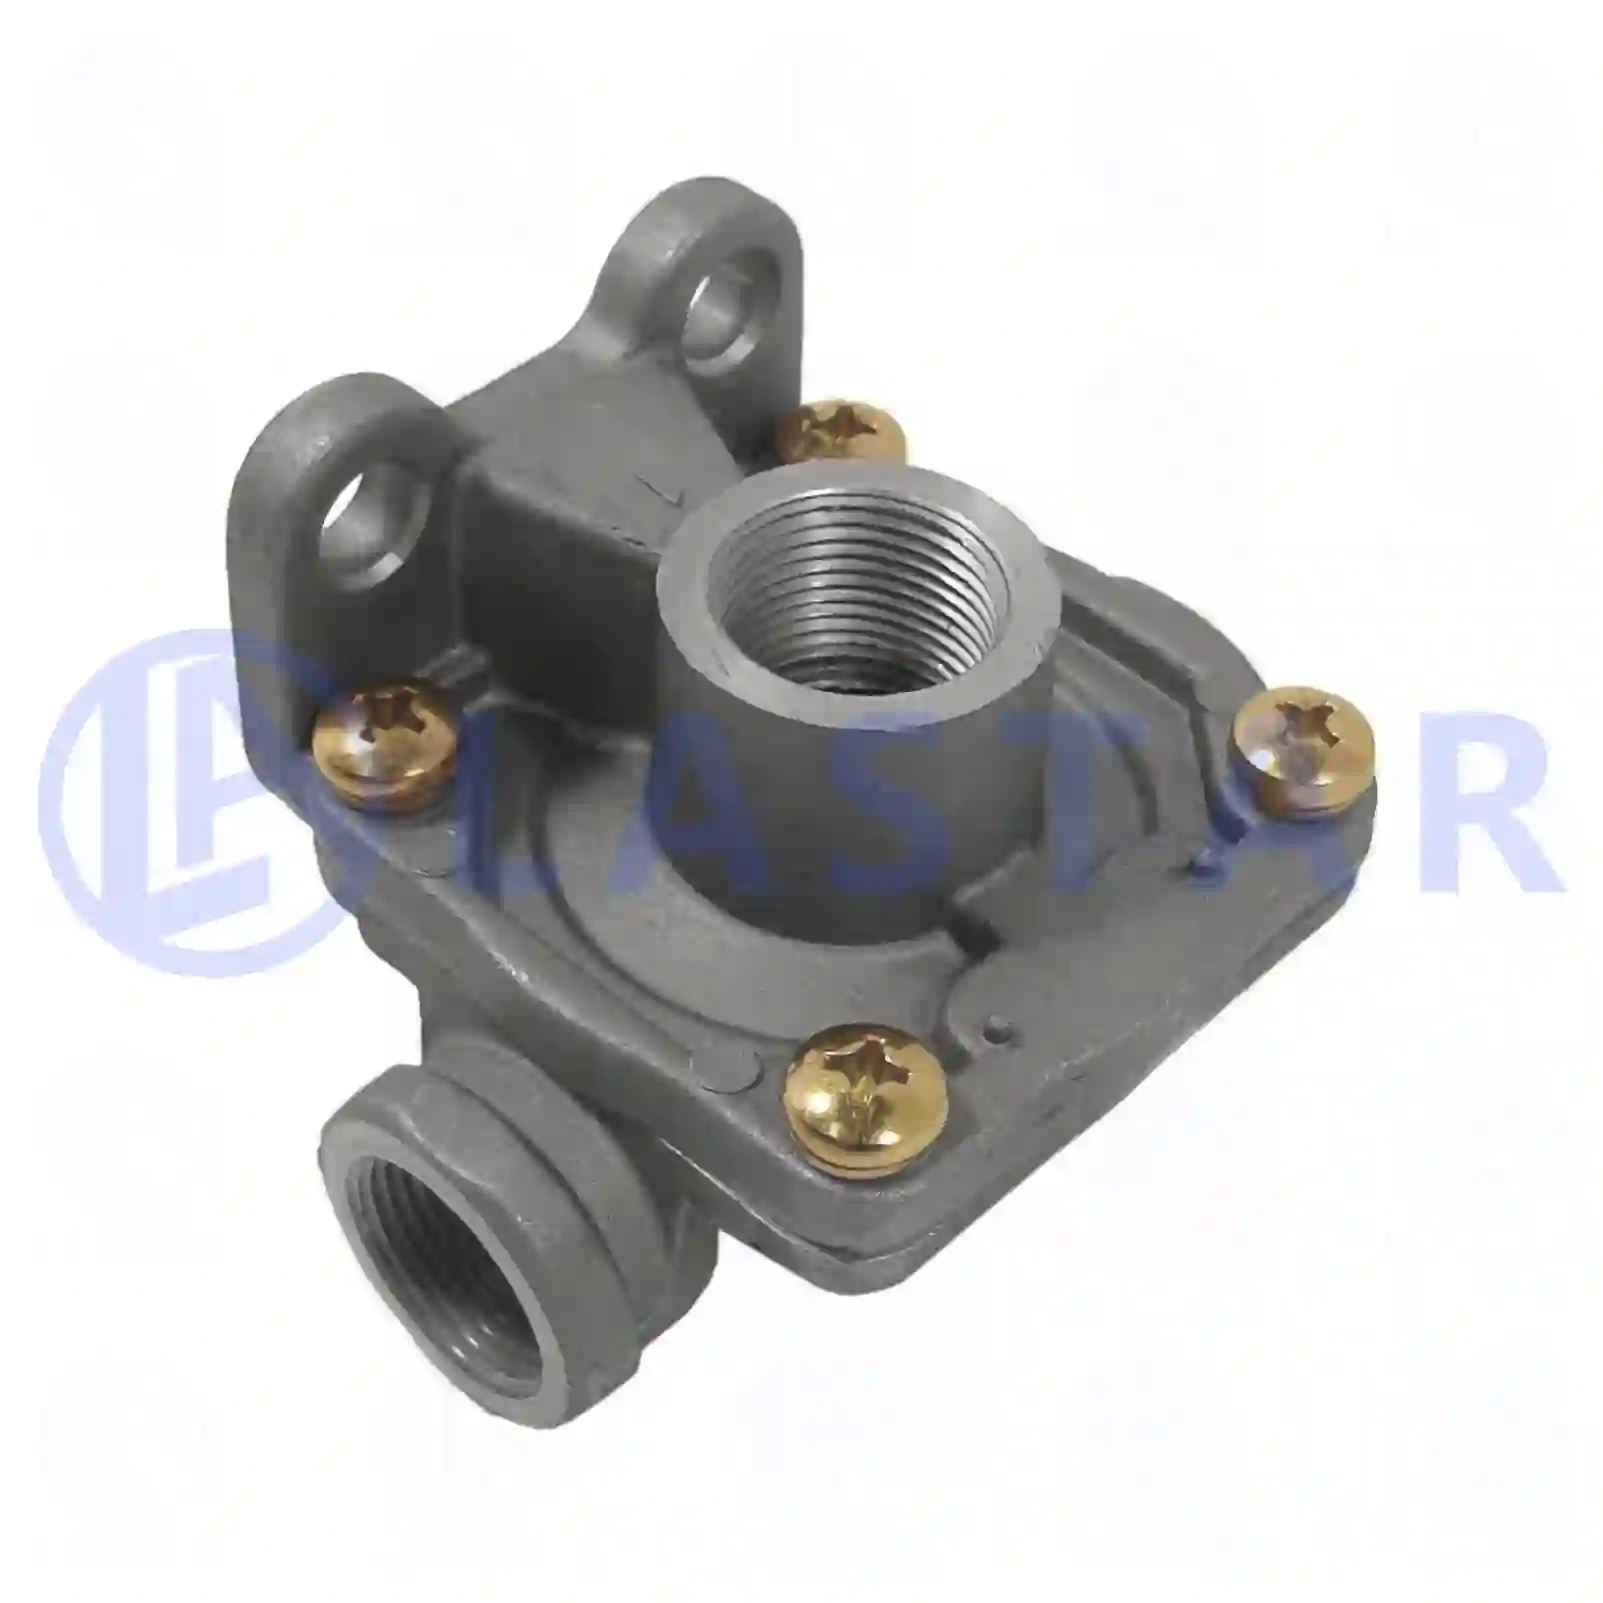  Quick release valve || Lastar Spare Part | Truck Spare Parts, Auotomotive Spare Parts